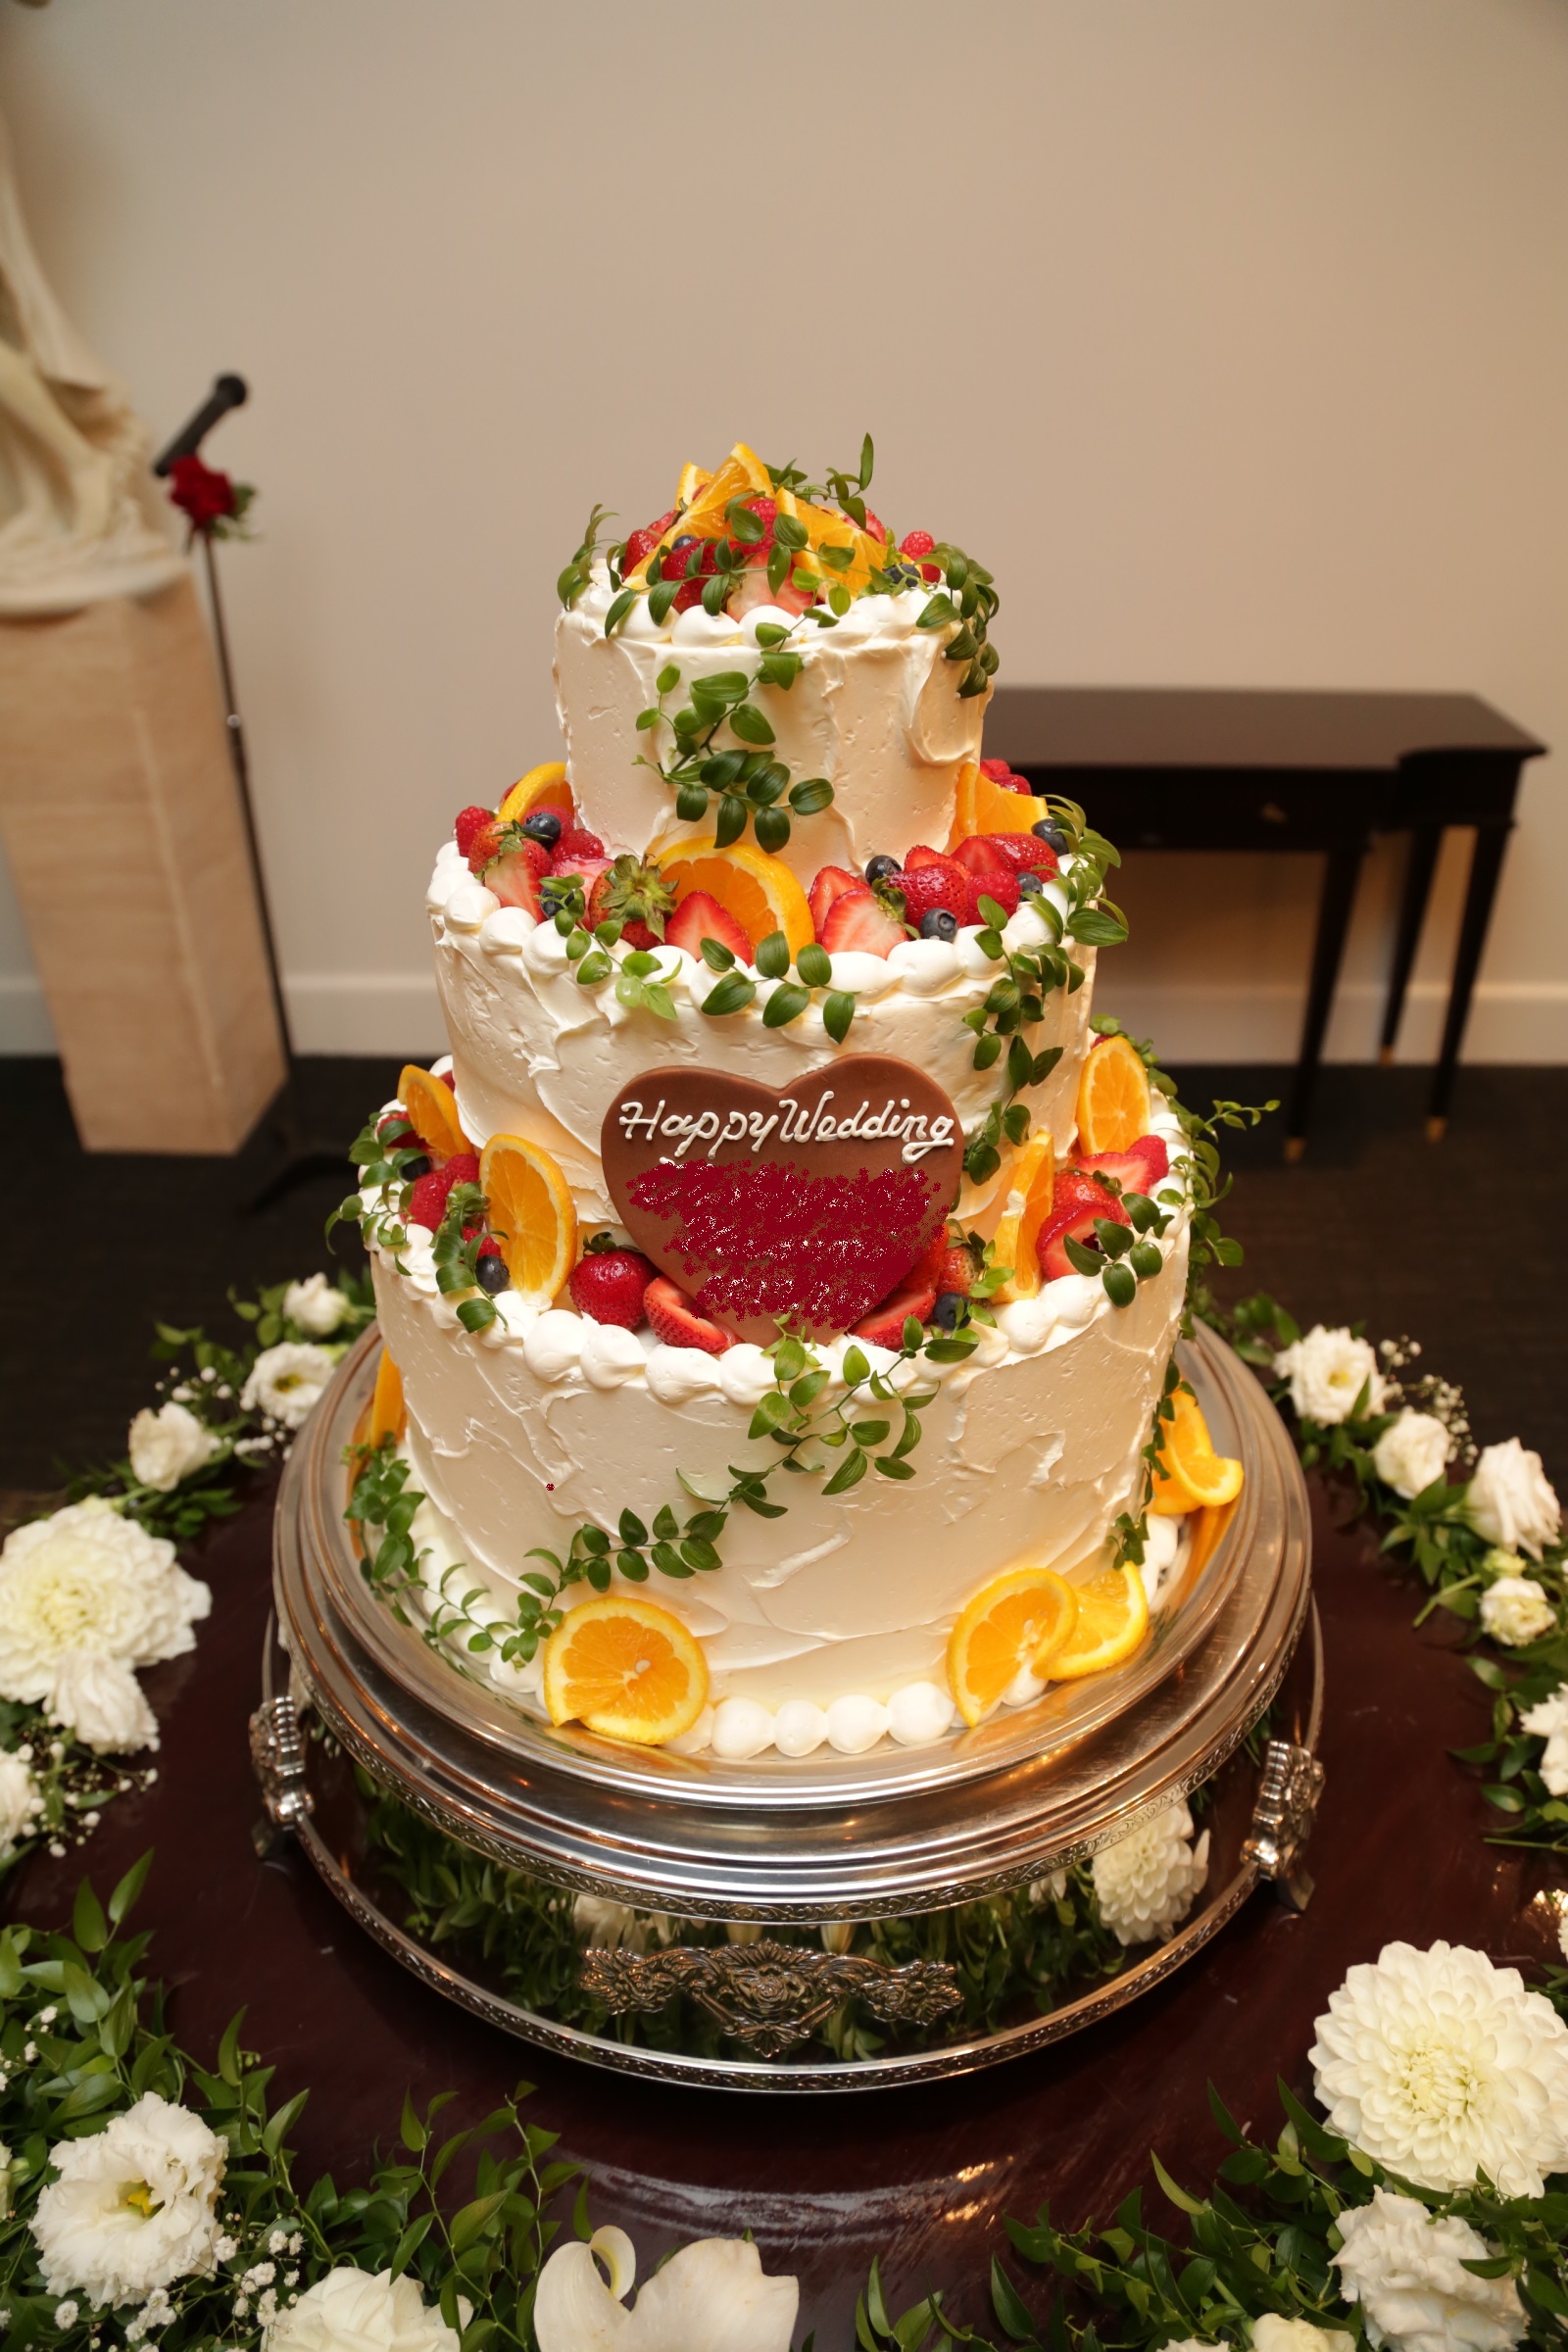 グリーン フルーツ のおしゃれウェディングケーキ マリエール太田 群馬県太田市の結婚式場 披露宴会場 挙式